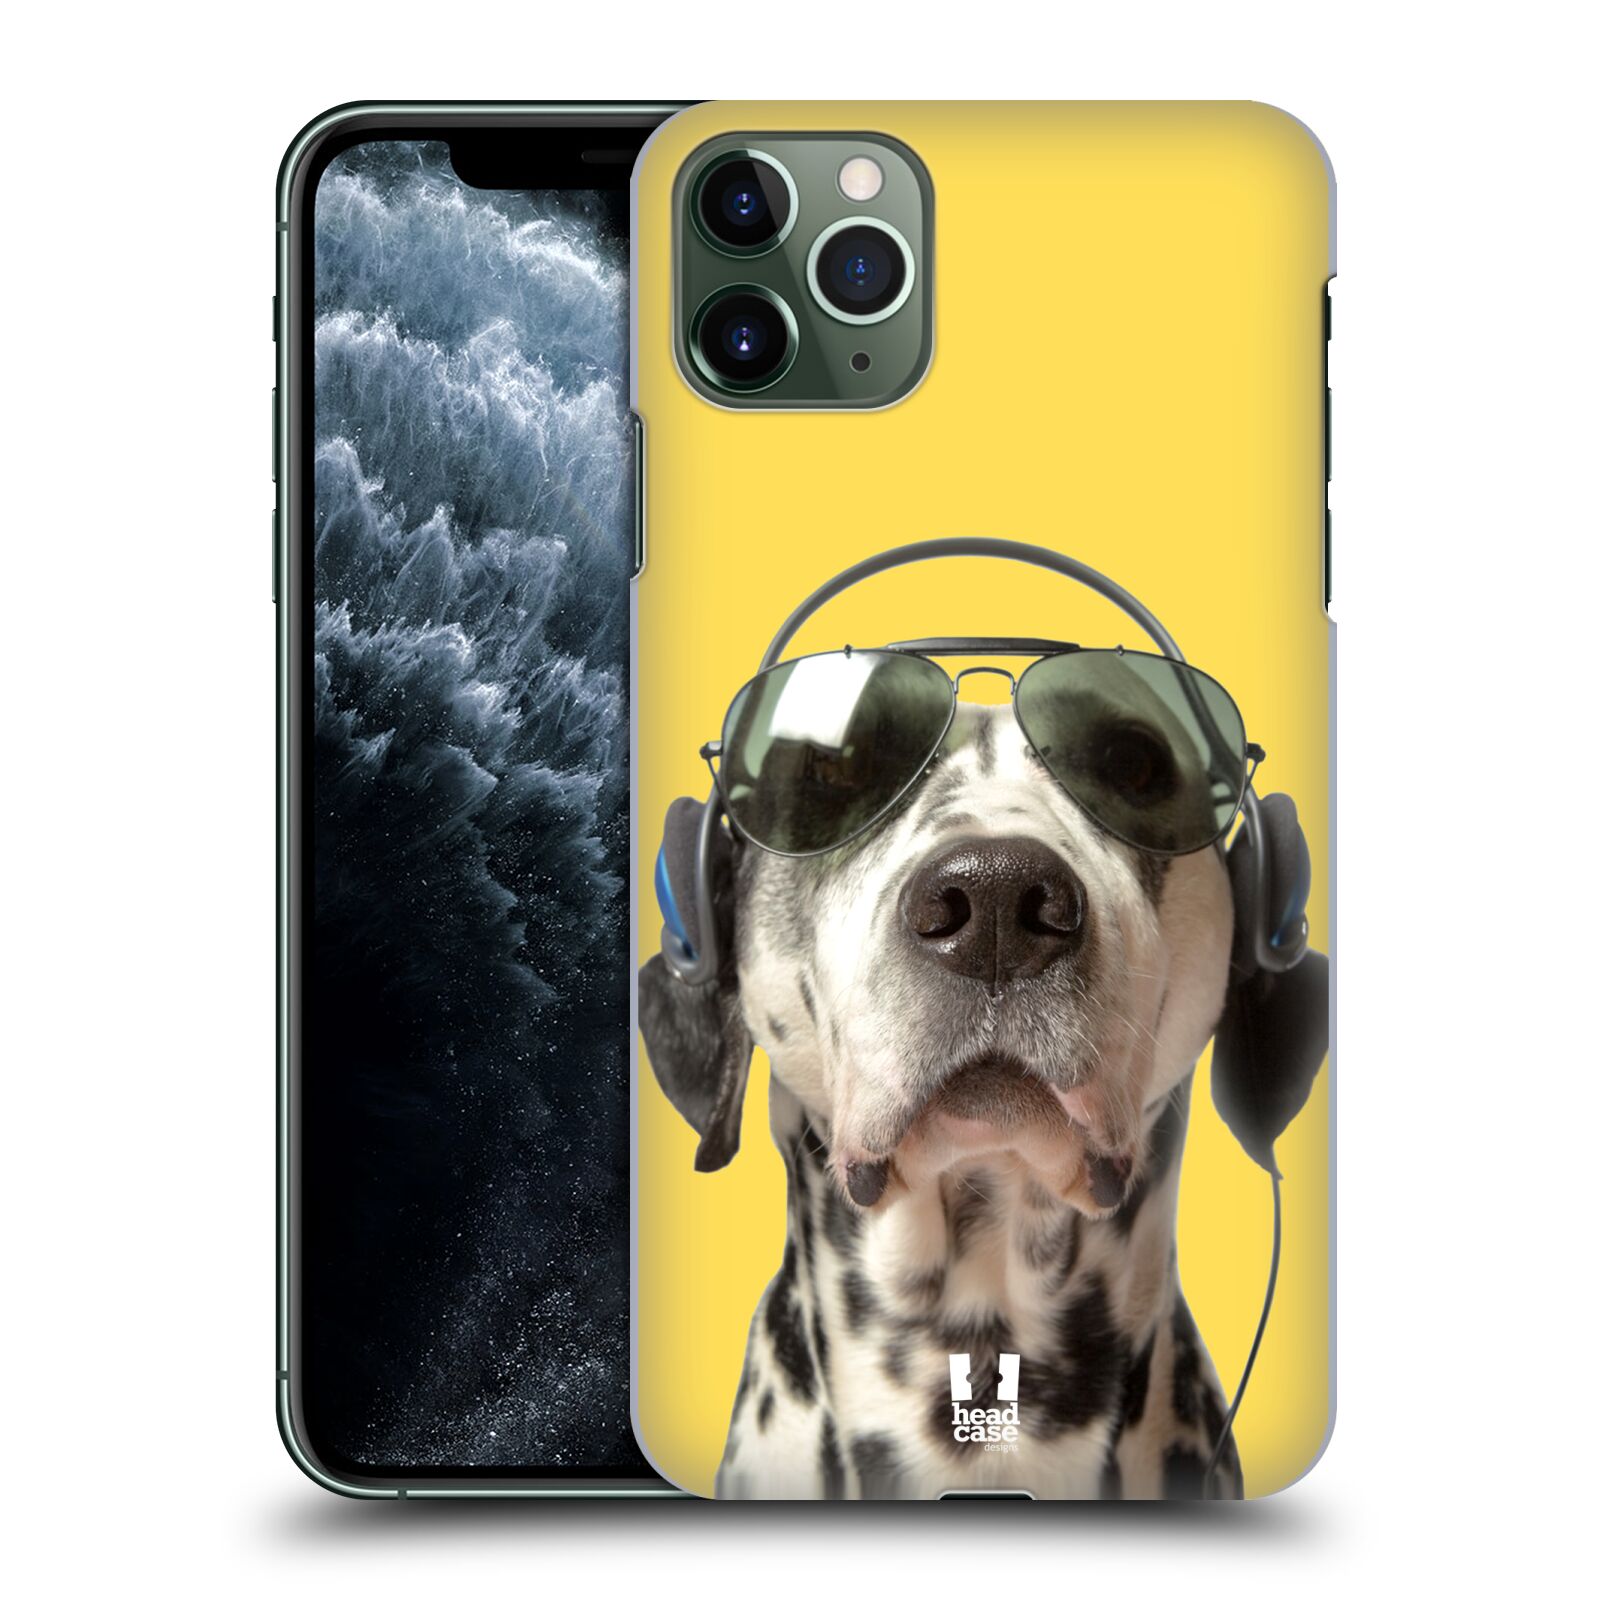 Pouzdro na mobil Apple Iphone 11 PRO MAX - HEAD CASE - vzor Legrační zvířátka dalmatin se sluchátky žlutá